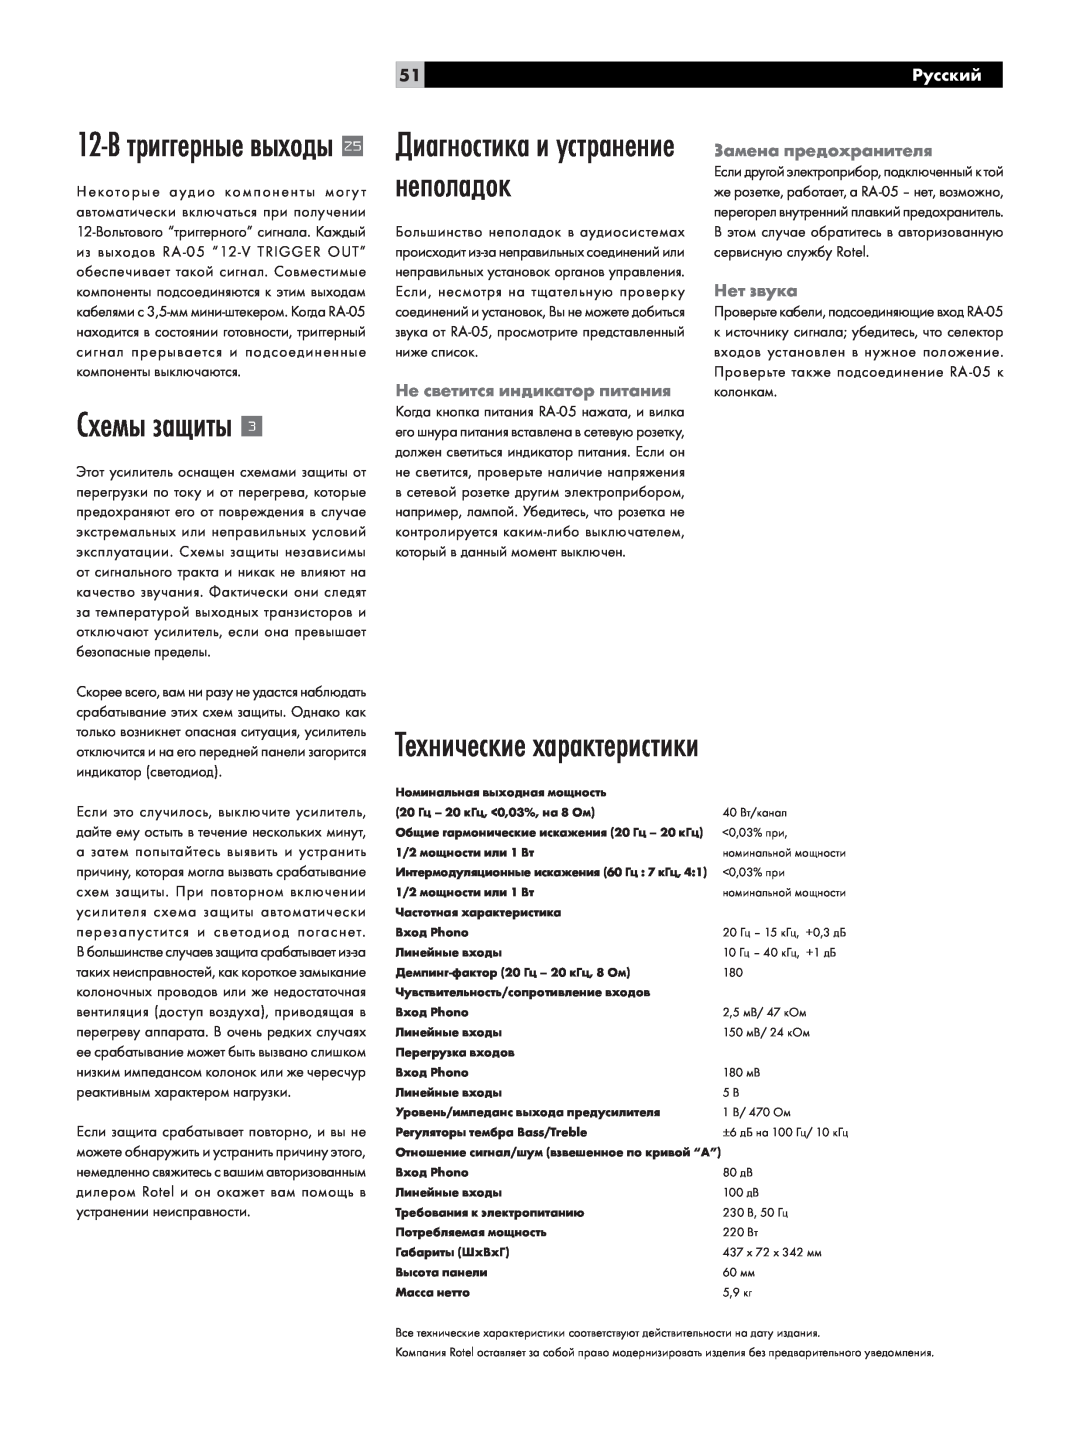 Rotel RA-05 Схемы защиты, Технические характеристики, Диагностика и устранение неполадок, 12-Втриггерные выходы, Русский 